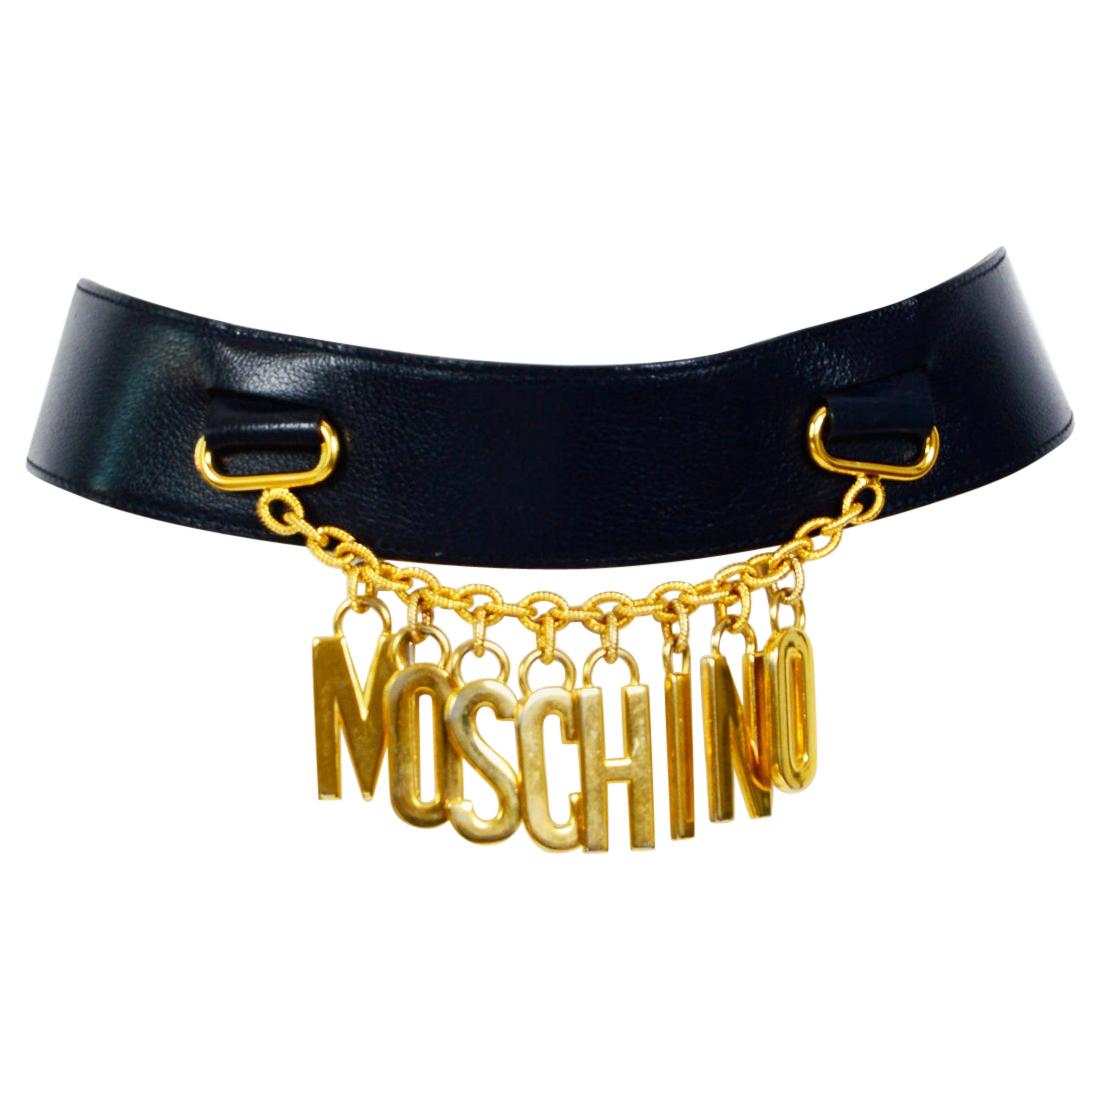 Authentique Moschino vintage 1980s logo chain drop dark blue leather belt